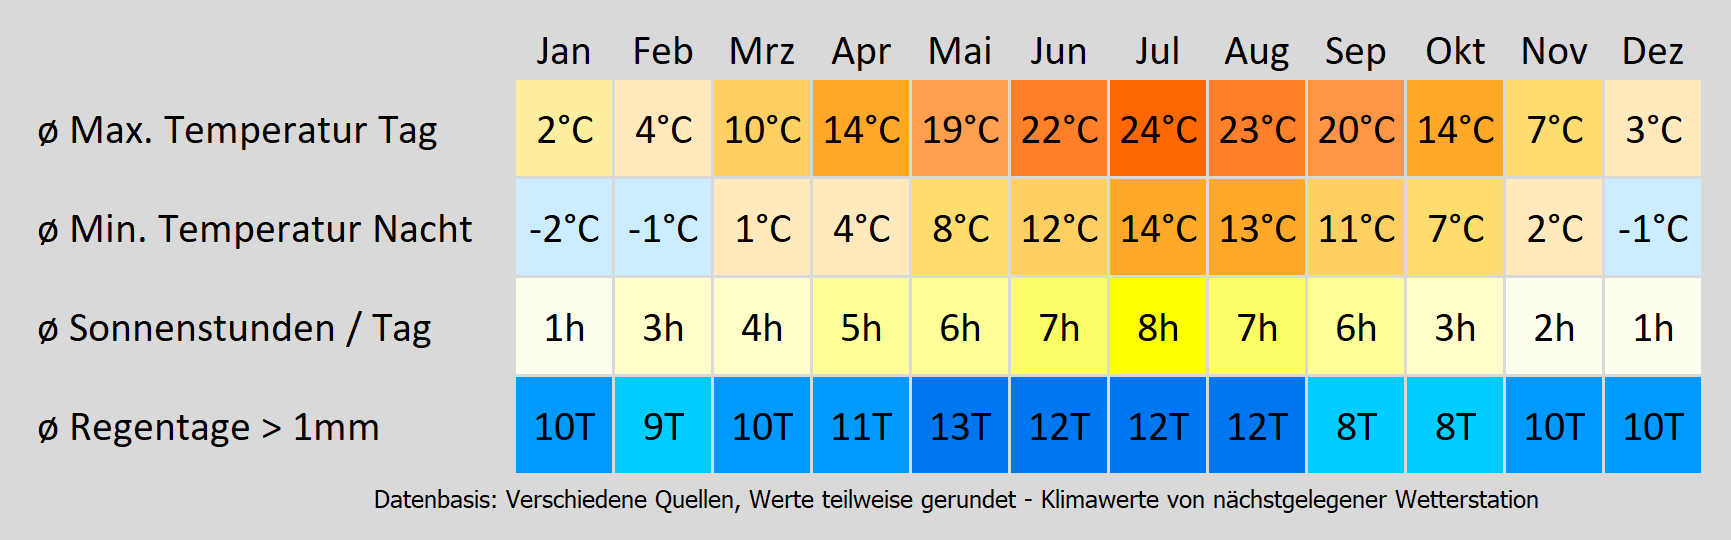 Wohnmobil mieten am Bodensee - wie wird das Wetter? Mit der Klimakarte können Sie sich informieren!